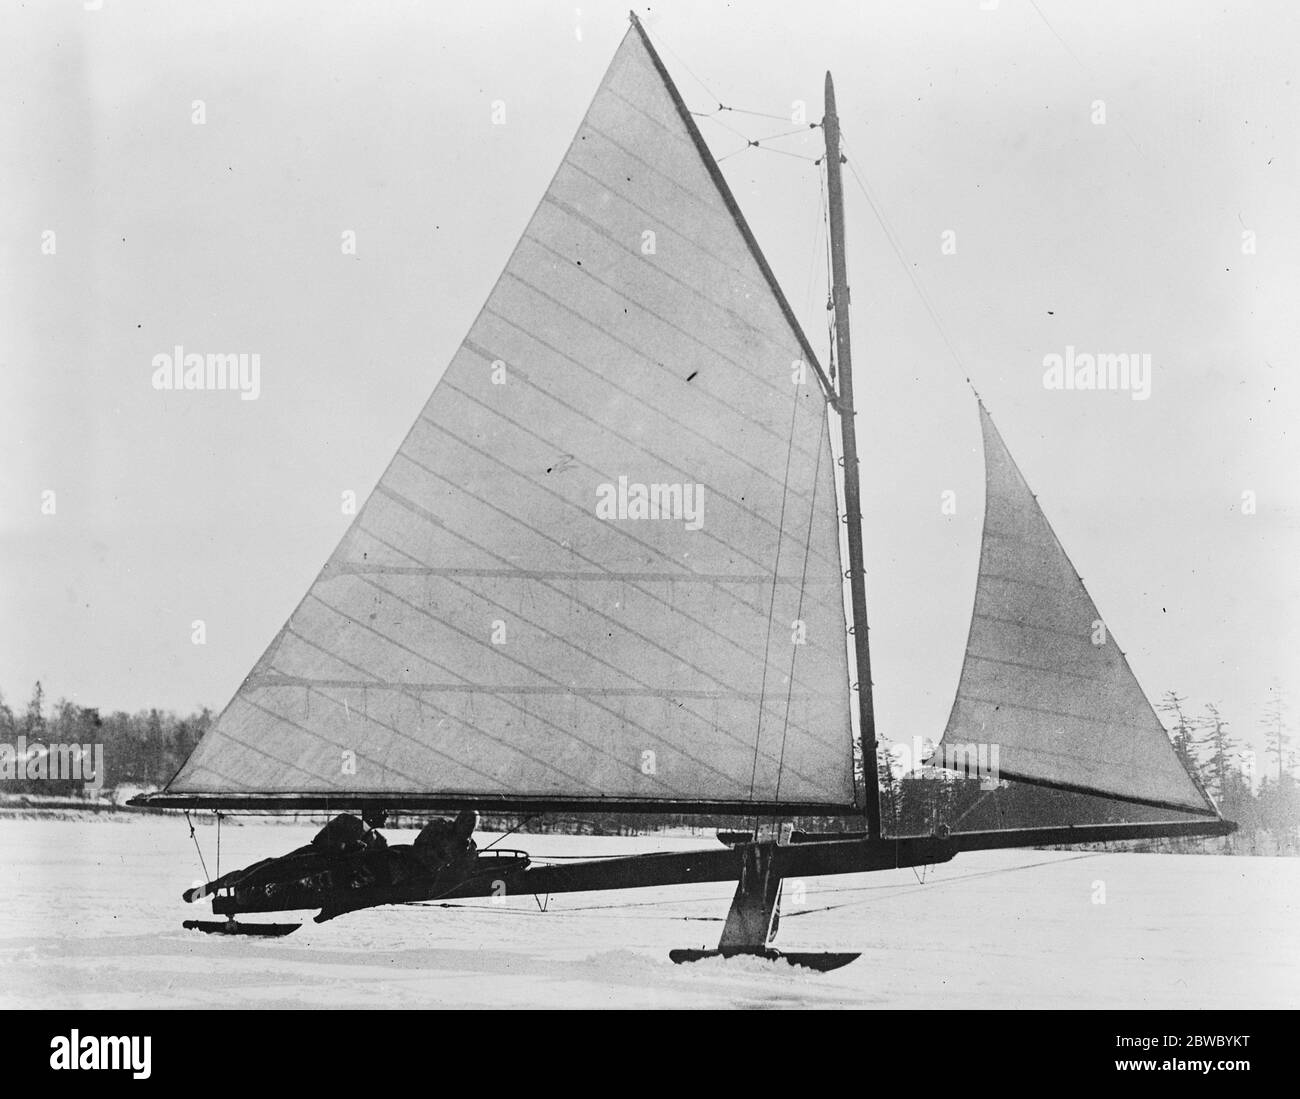 Yachting sur glace à New York le Marquis Albizzi ( Italie ) yachting sur glace au club de Lake Placid , Mirror Lake , New York 9 janvier 1925 Banque D'Images